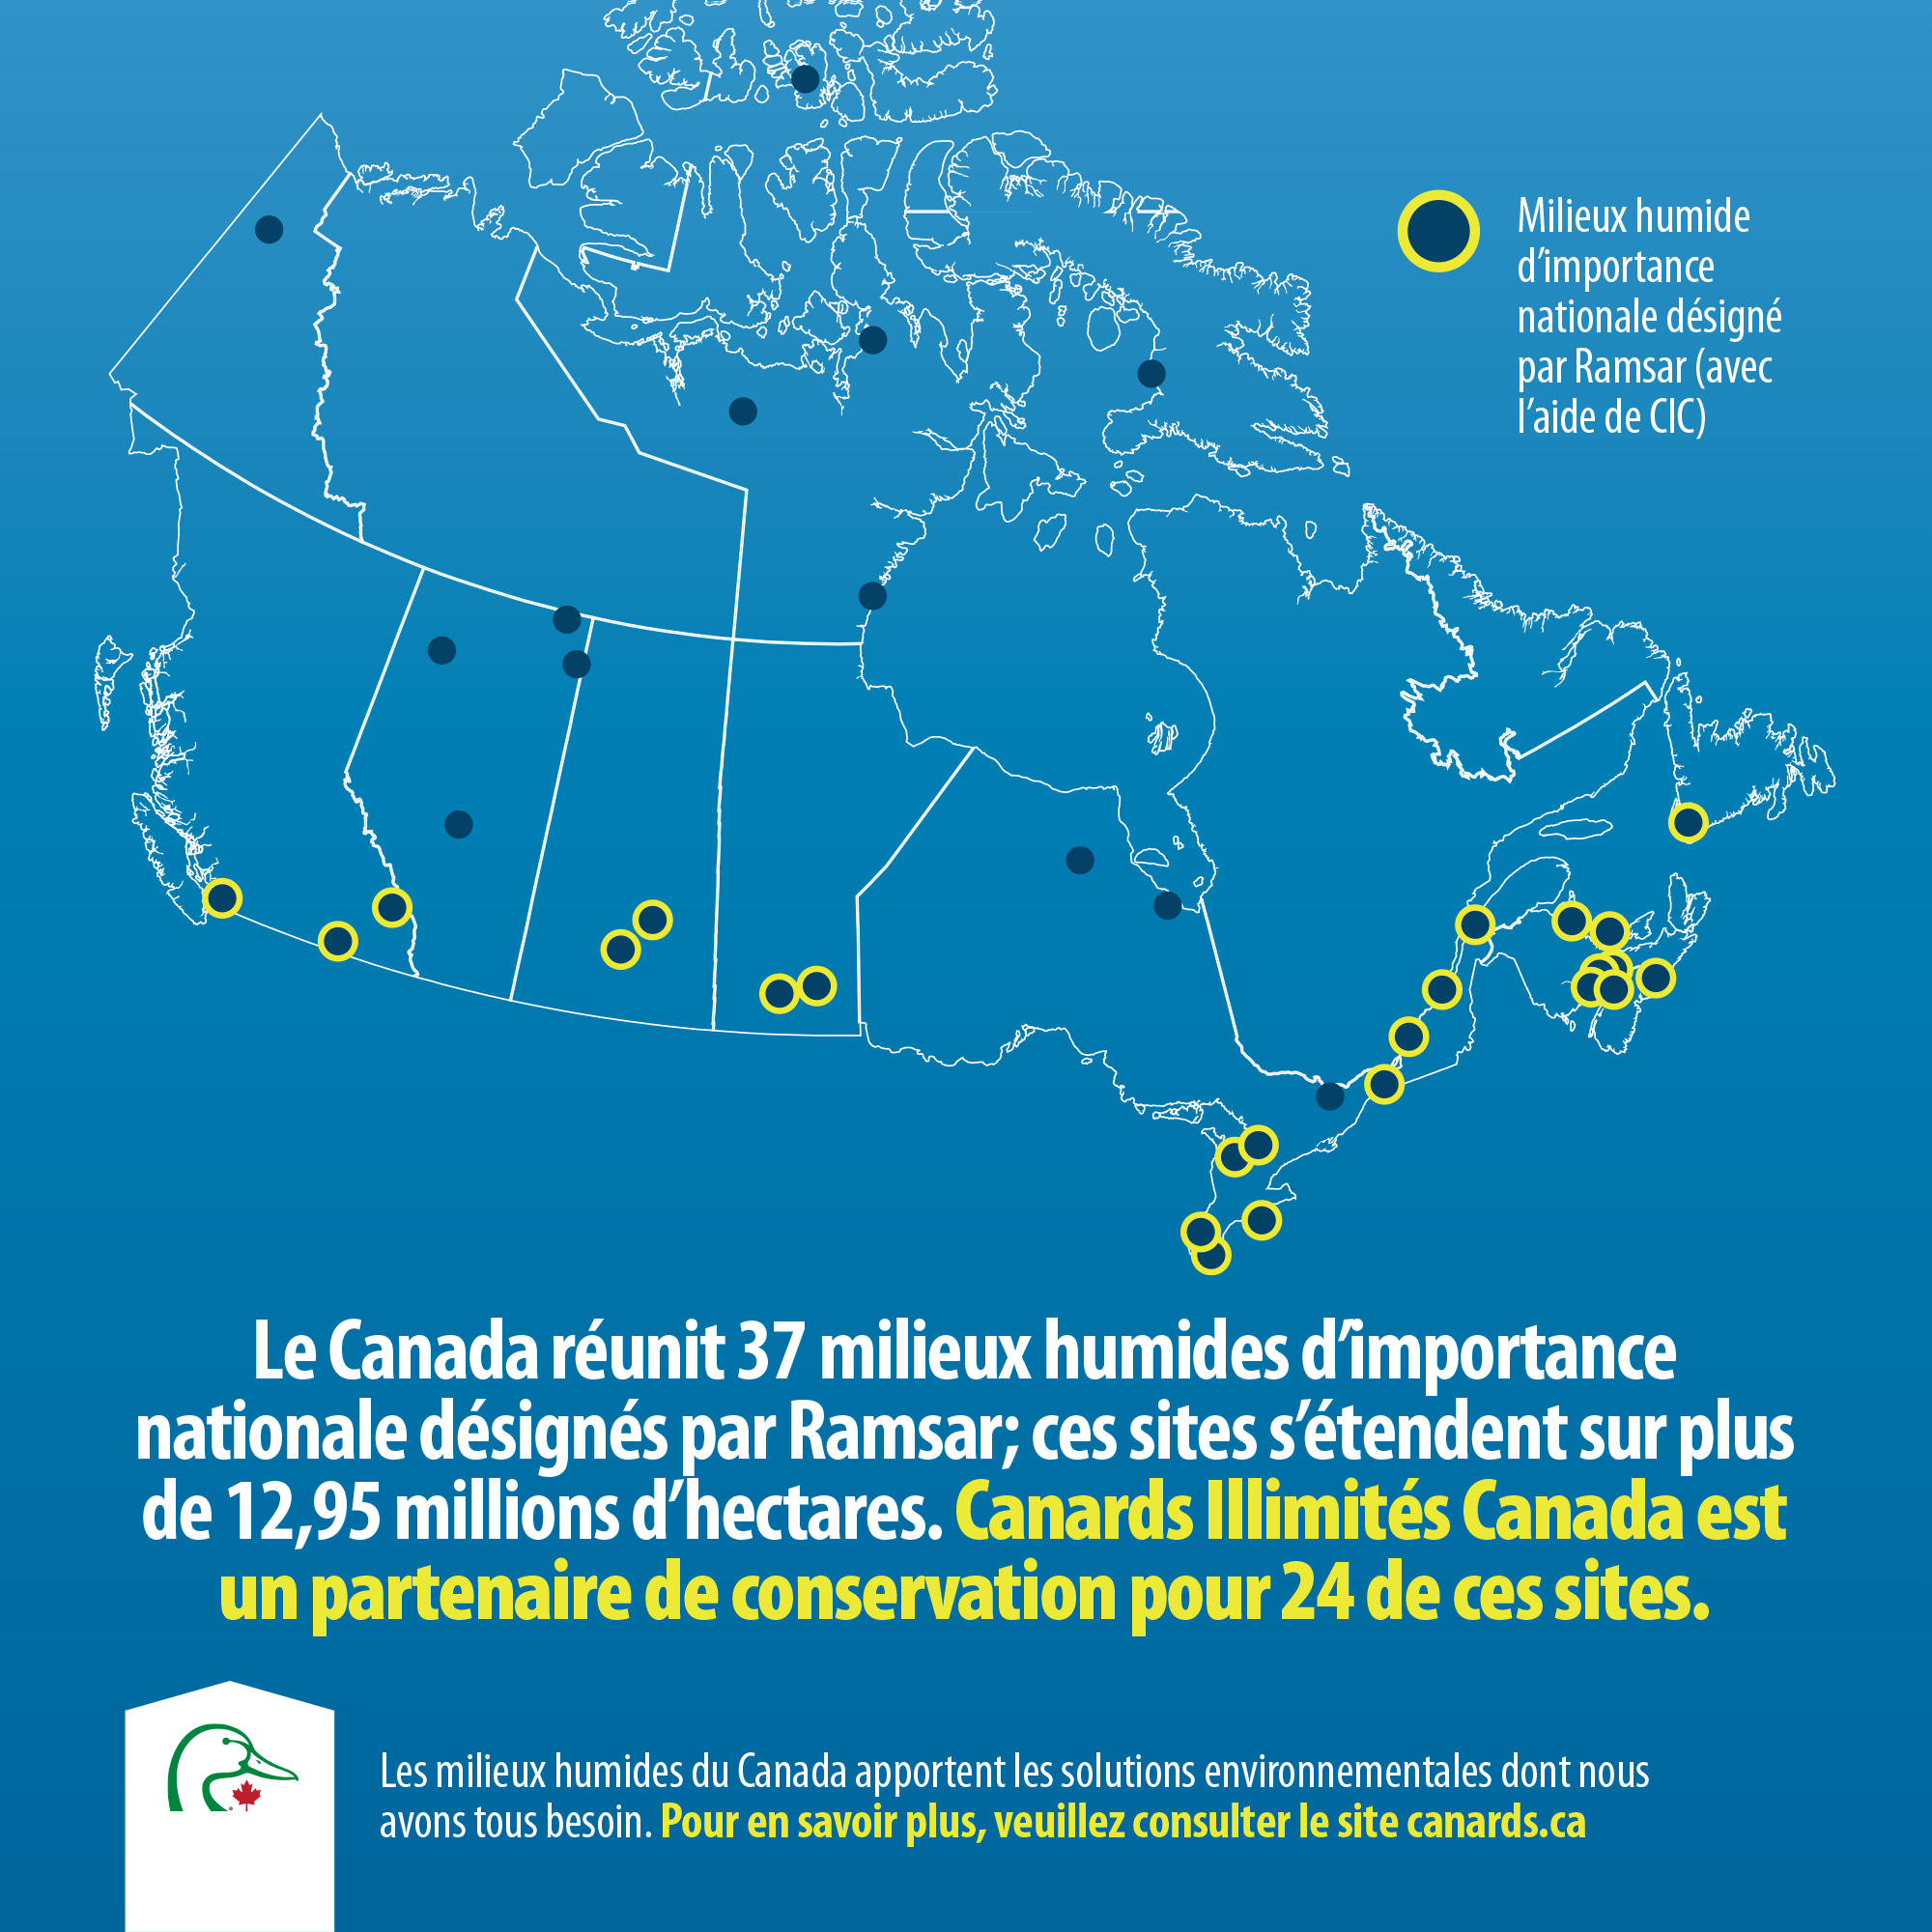 Le Canada réunit 37 milieux humides d’importance nationale désignés par Ramsar; ces sites s’étendent sur plus de 12,95 millions d’hectares.